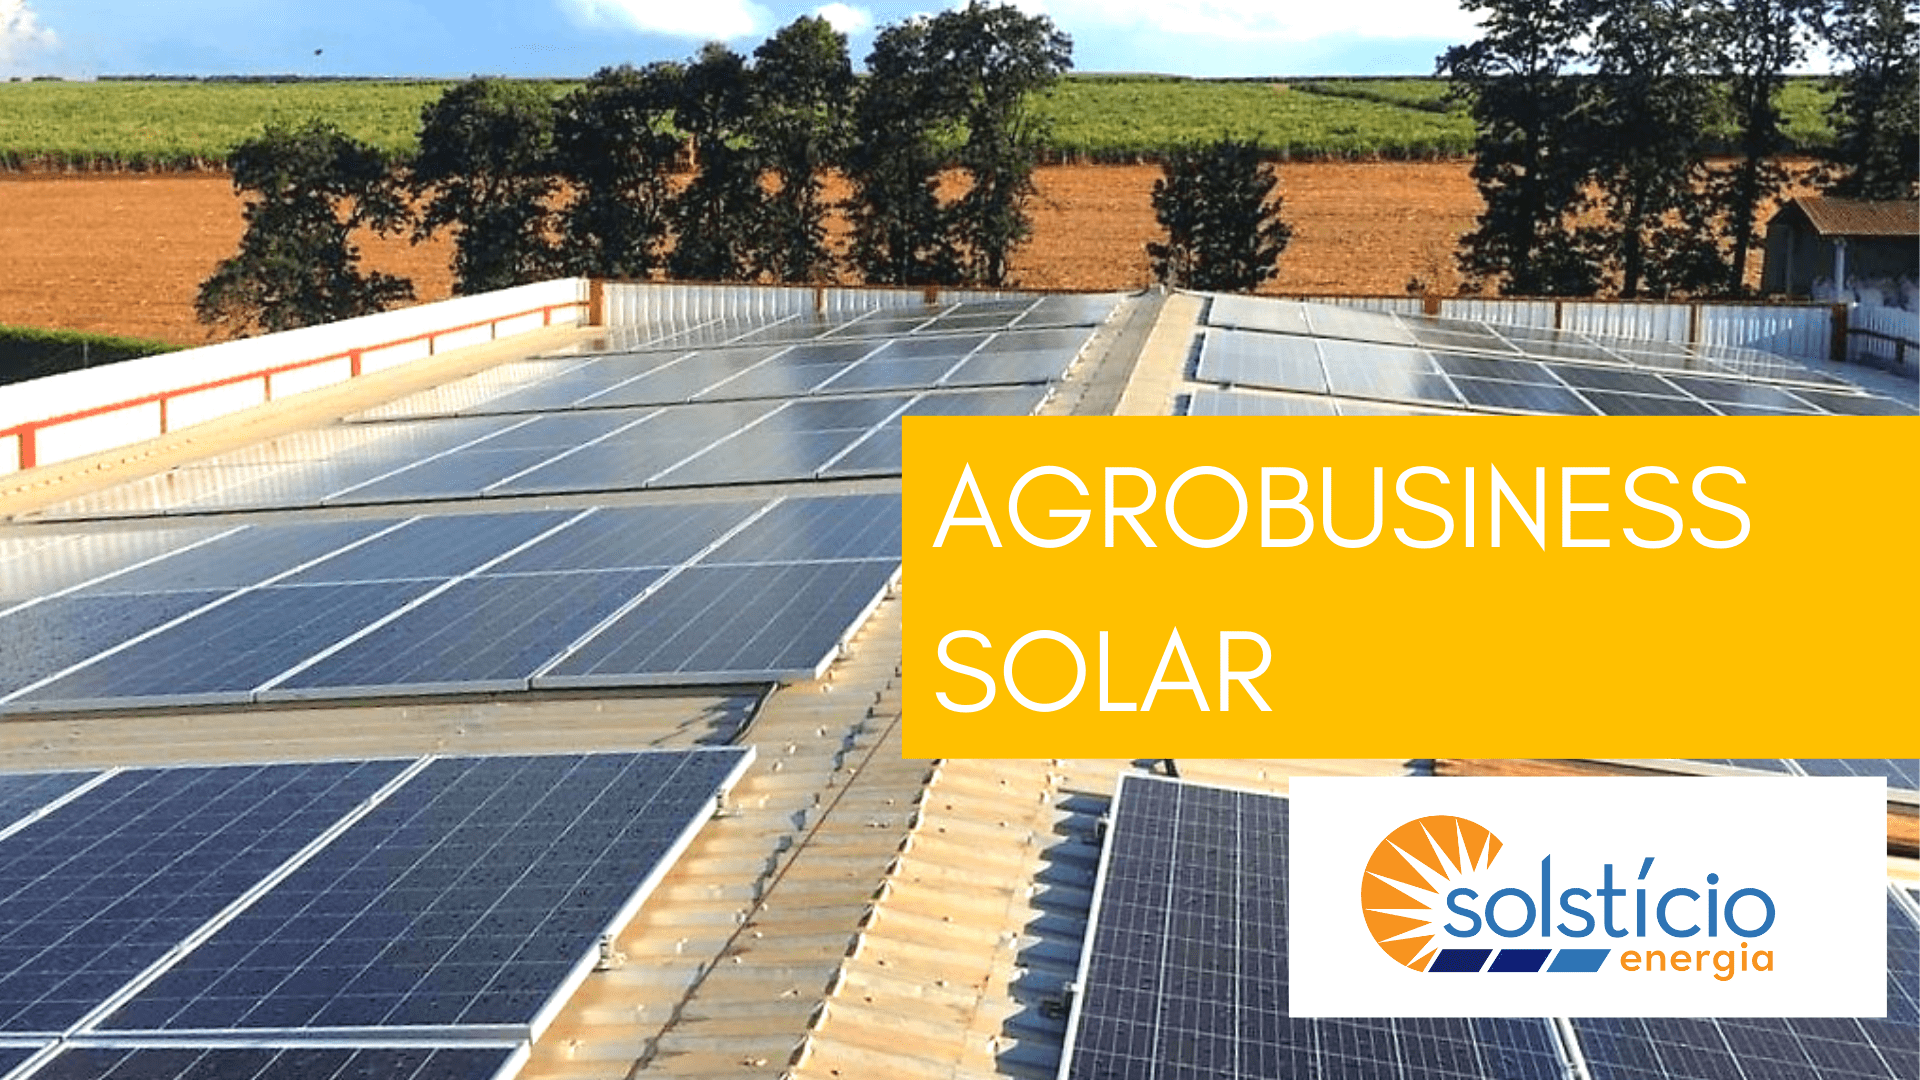 Capa da matéria: Energia Solar no Agronegócio, mostrando o sistema solar fotovoltaico finalizado.